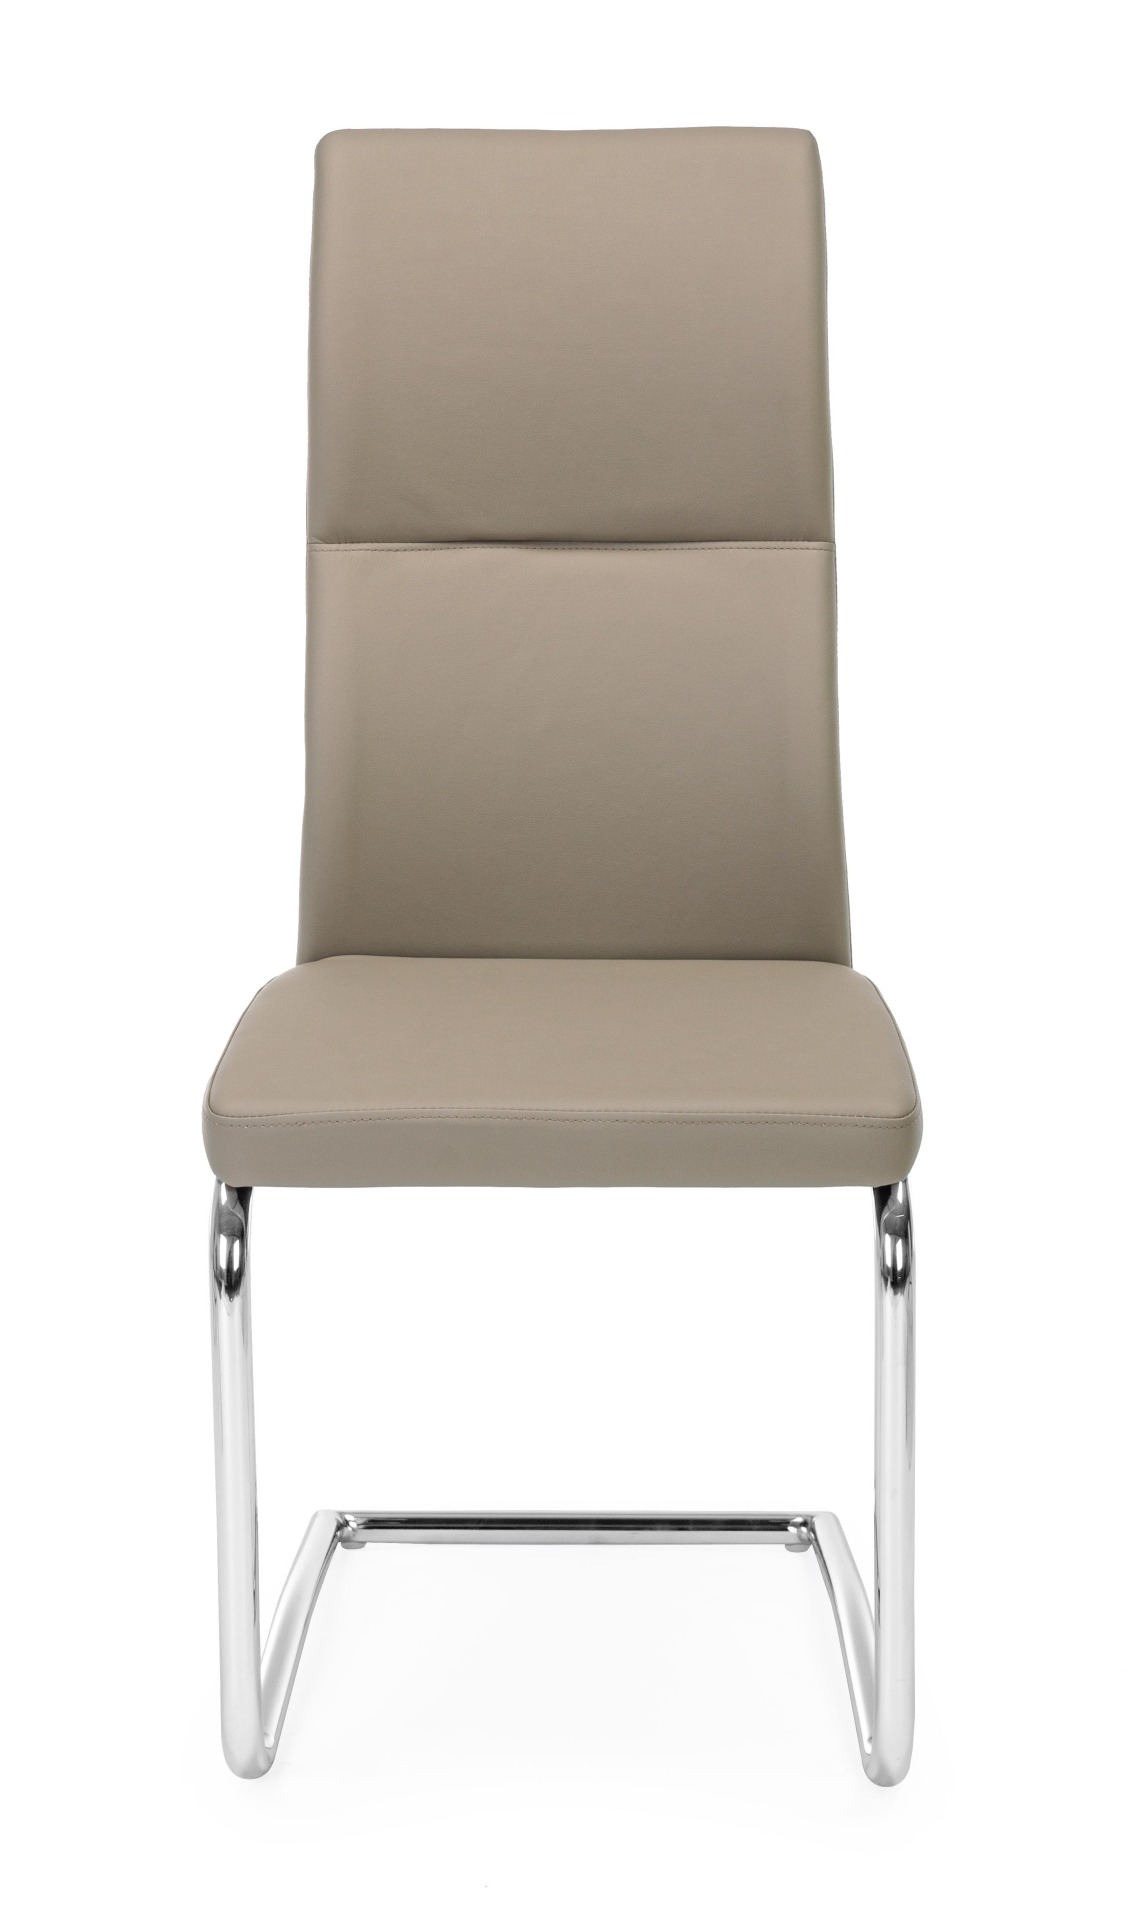 Der Esszimmerstuhl Thelma überzeugt mit seinem modernem Design. Gefertigt wurde der Stuhl aus Kunstleder, welches einen Taupe Farbton besitzt. Das Gestell ist aus Metall und ist Silber. Die Sitzhöhe beträgt 47 cm.